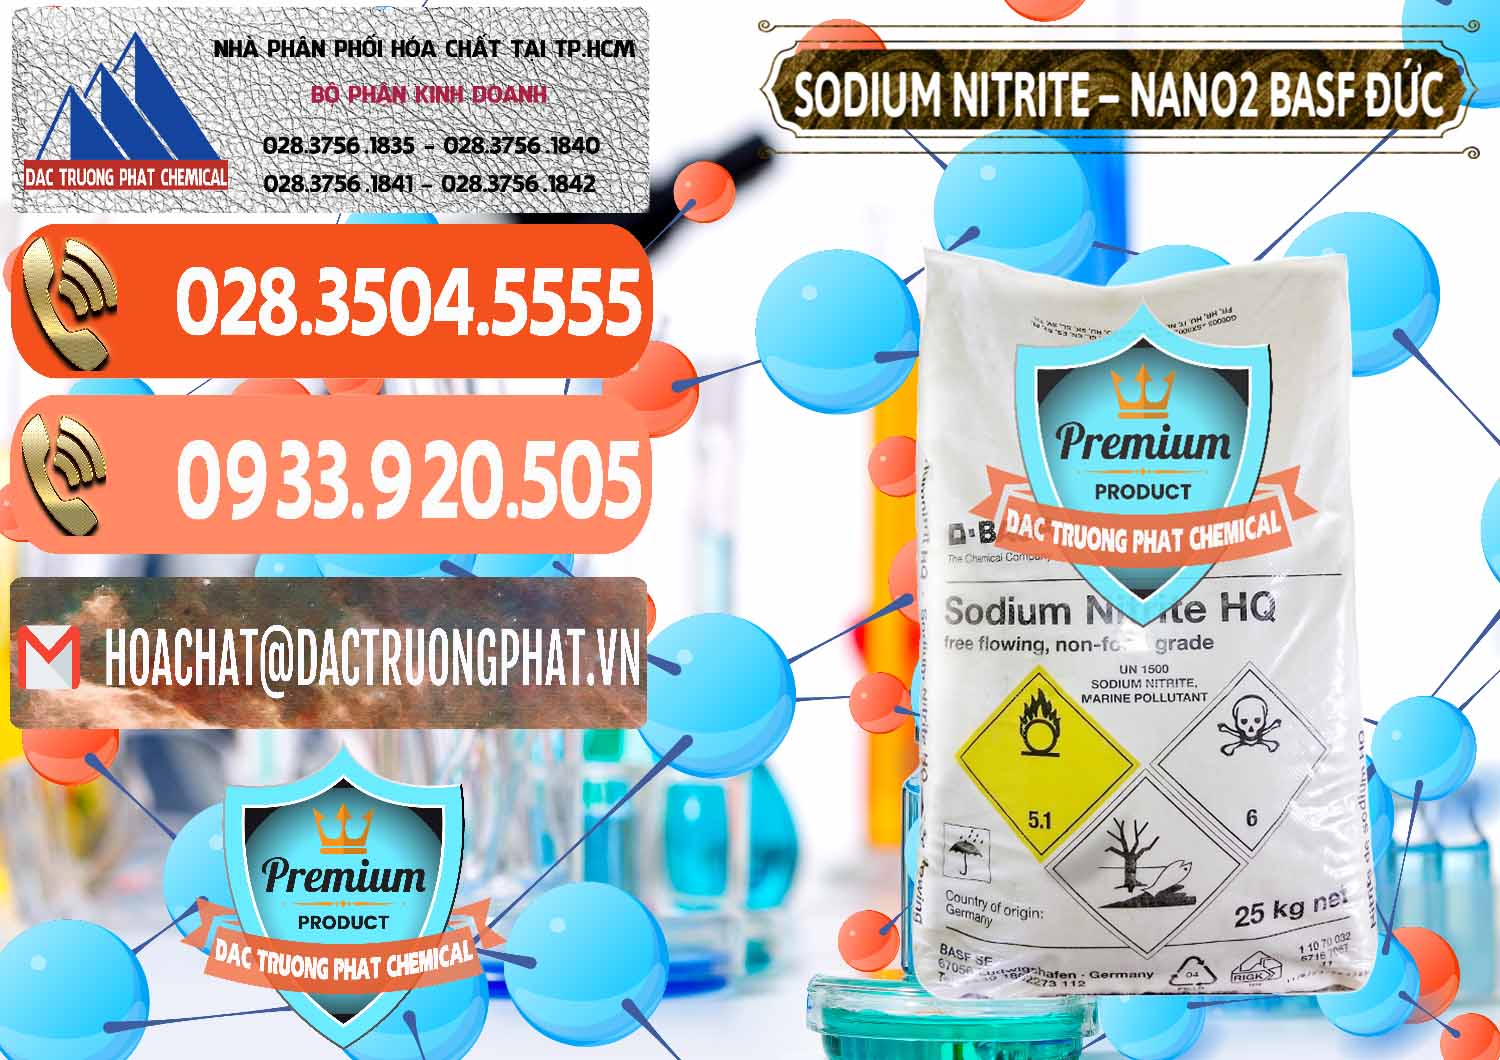 Chuyên kinh doanh và bán Sodium Nitrite - NANO2 Đức BASF Germany - 0148 - Công ty cung cấp - phân phối hóa chất tại TP.HCM - hoachatmientay.com